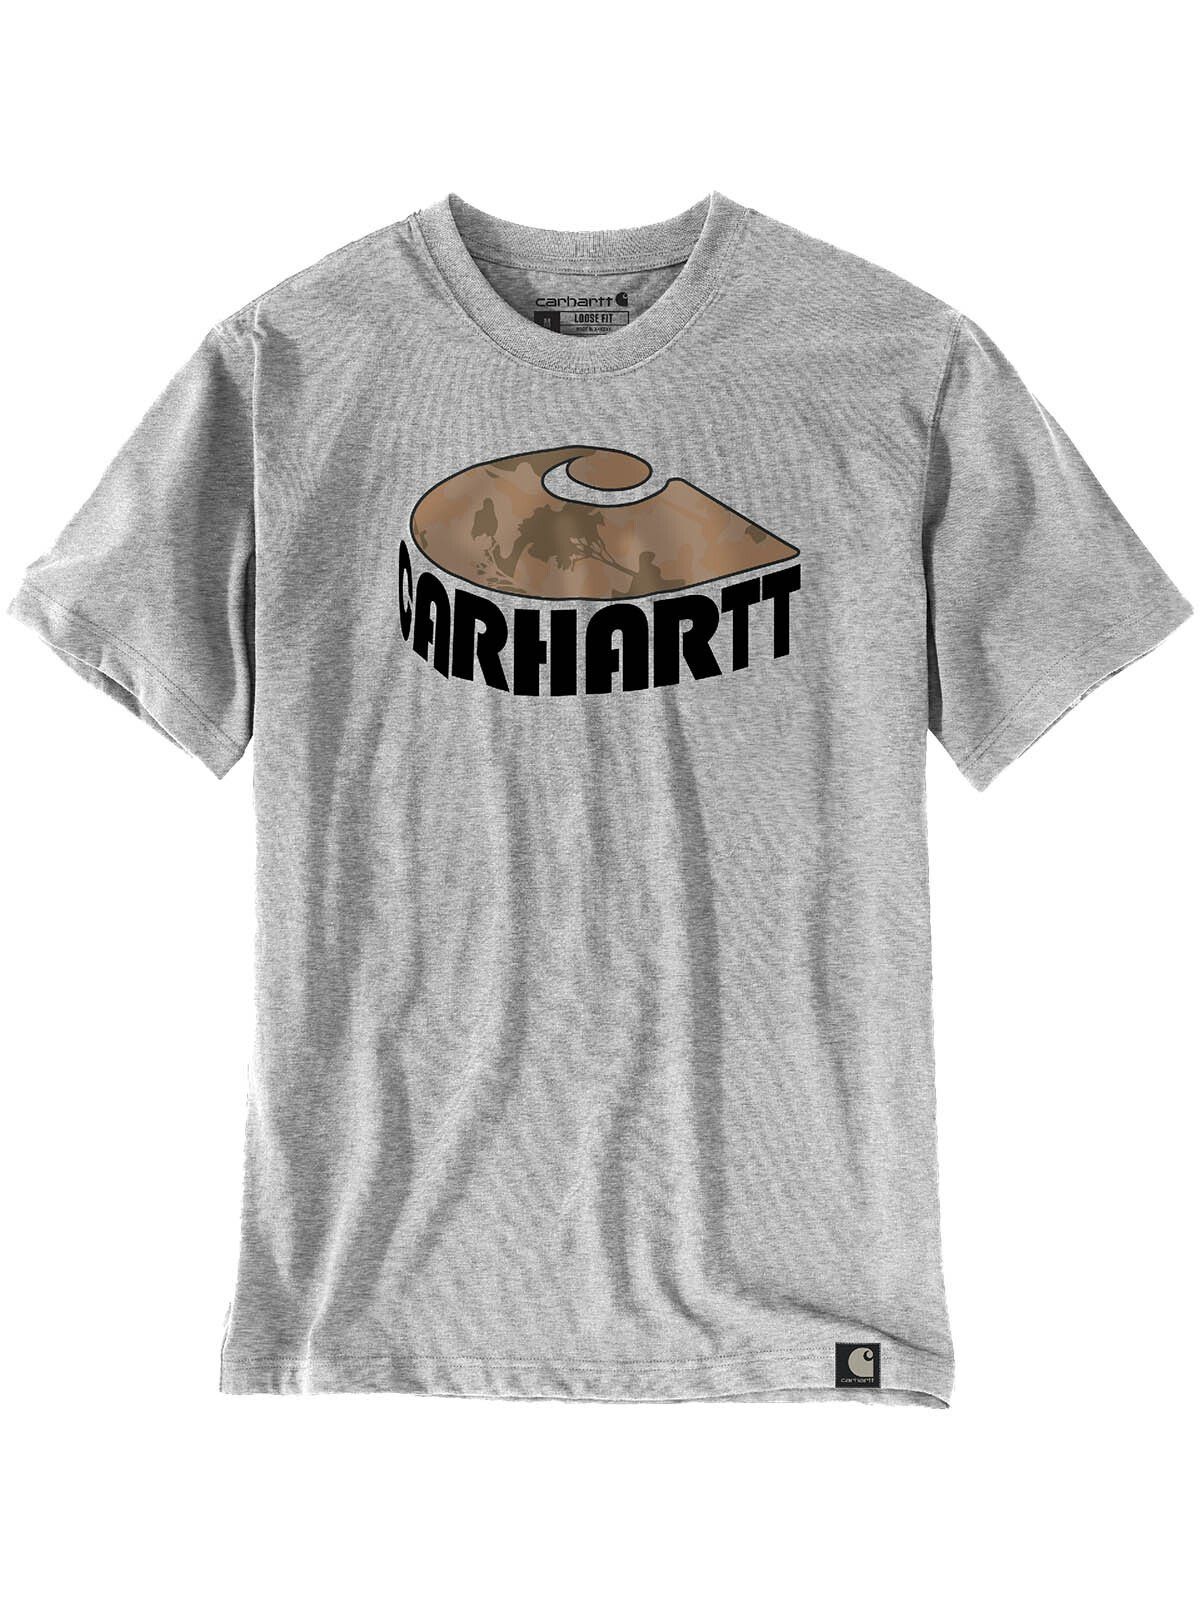 Carhartt T-Shirt 106155-HGY Carhartt Camo